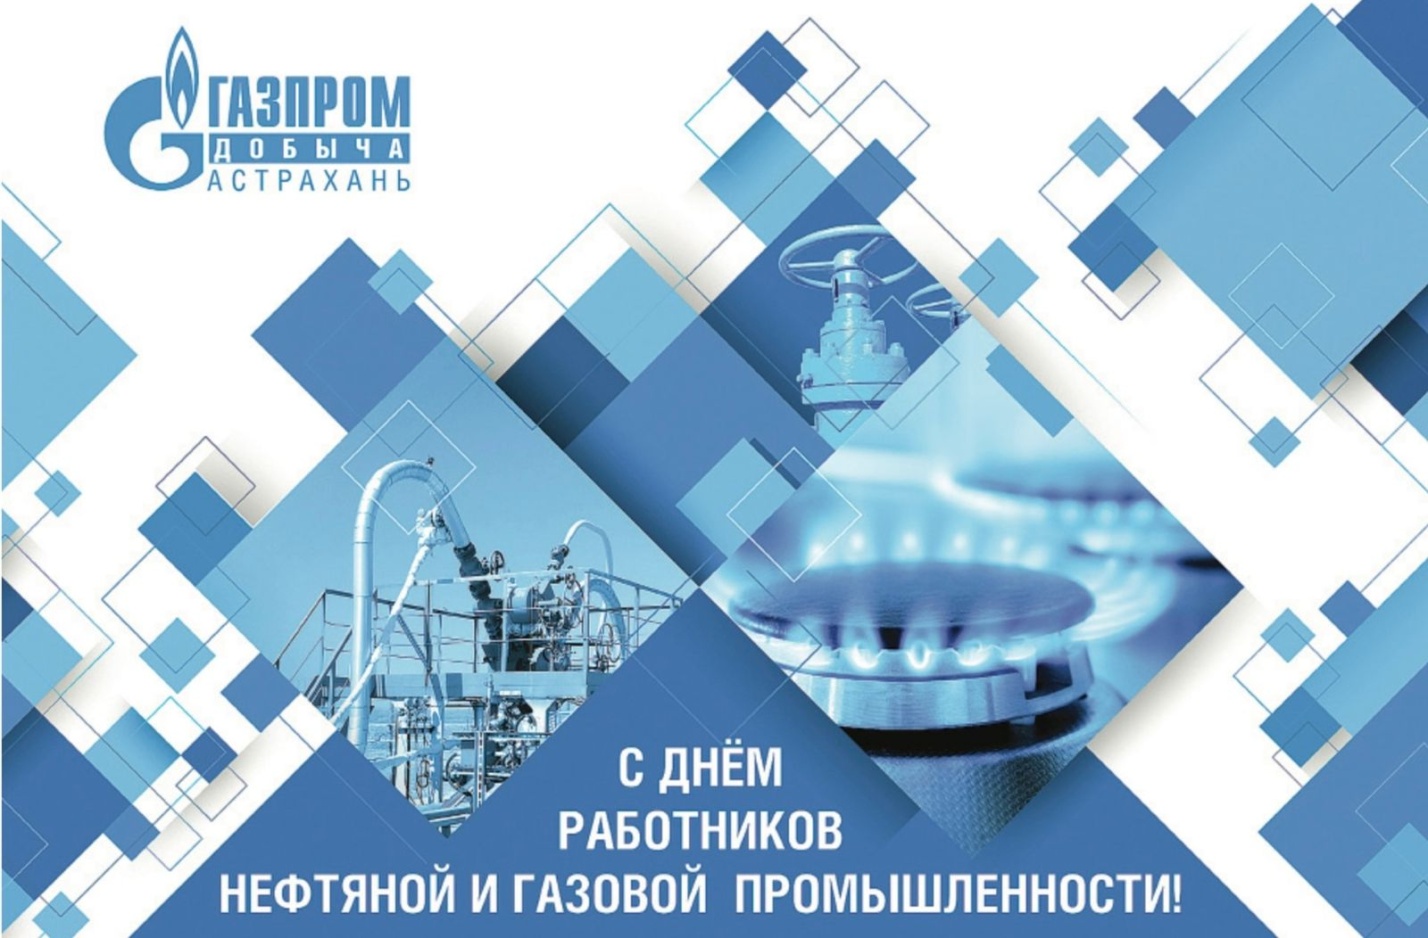 Генеральный директор ООО «Газпром добыча Астрахань» Андрей Мельниченко поздравил астраханцев с Днем работников нефтяной и газовой промышленности